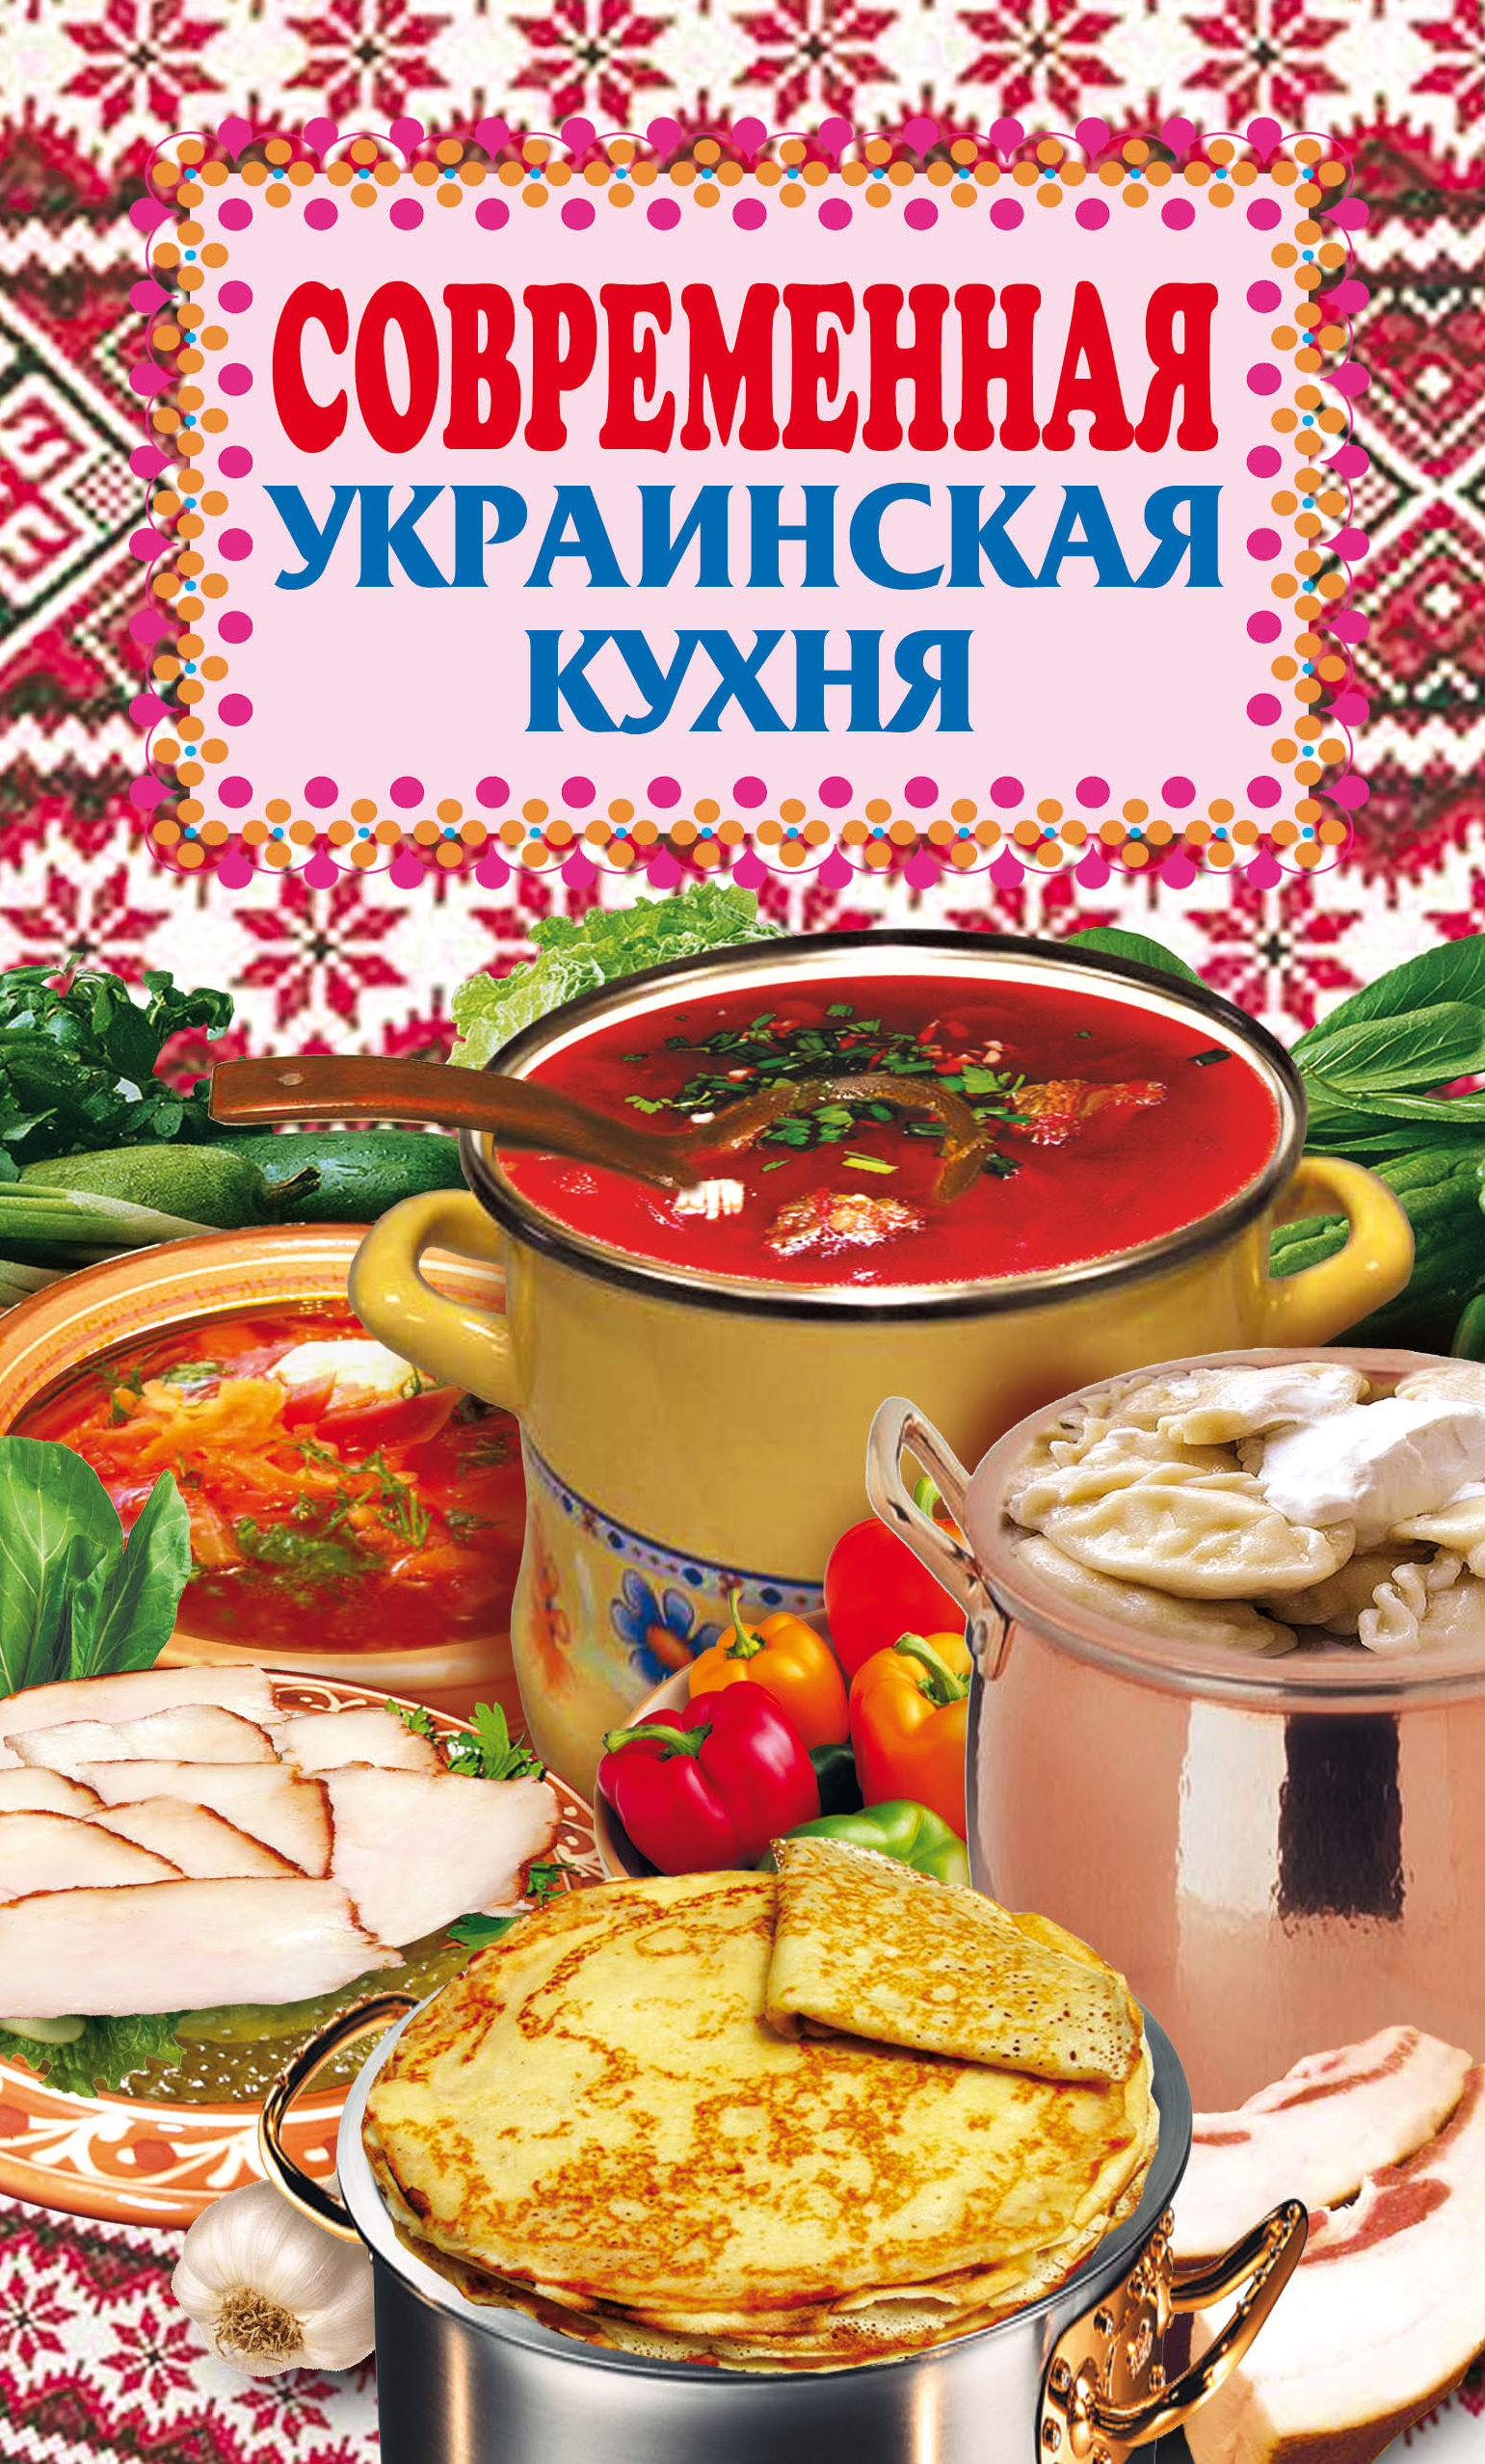 Книга Современная украинская кухня из серии , созданная Елена Грицак, может относится к жанру Кулинария. Стоимость электронной книги Современная украинская кухня с идентификатором 303472 составляет 45.00 руб.